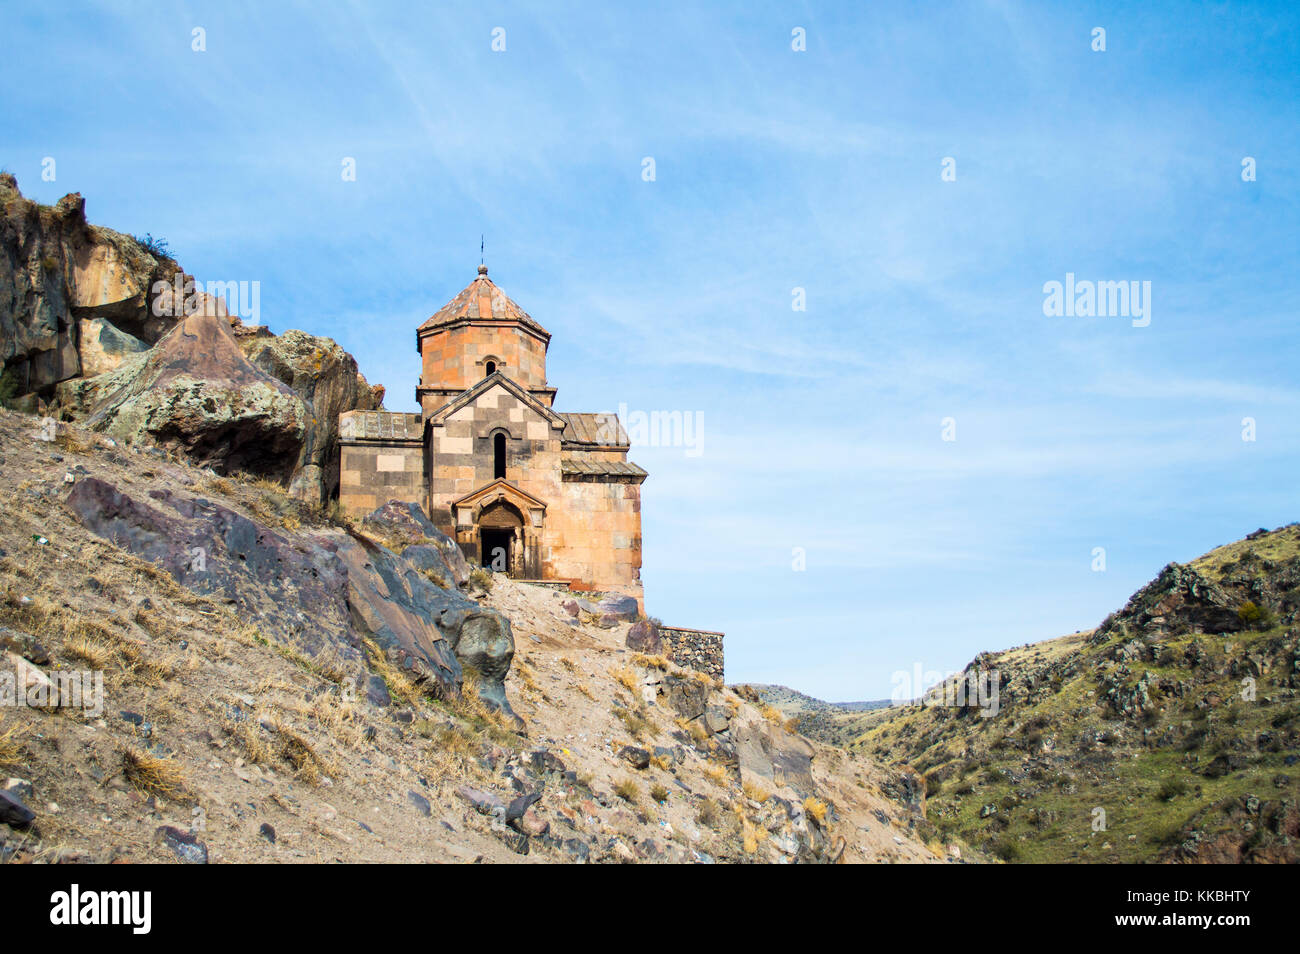 Kosh, Armenien - 14. November 2017: Saint stepanos Kirche (7. Jahrhundert) im Dorf von Kosh, Armenien Stockfoto